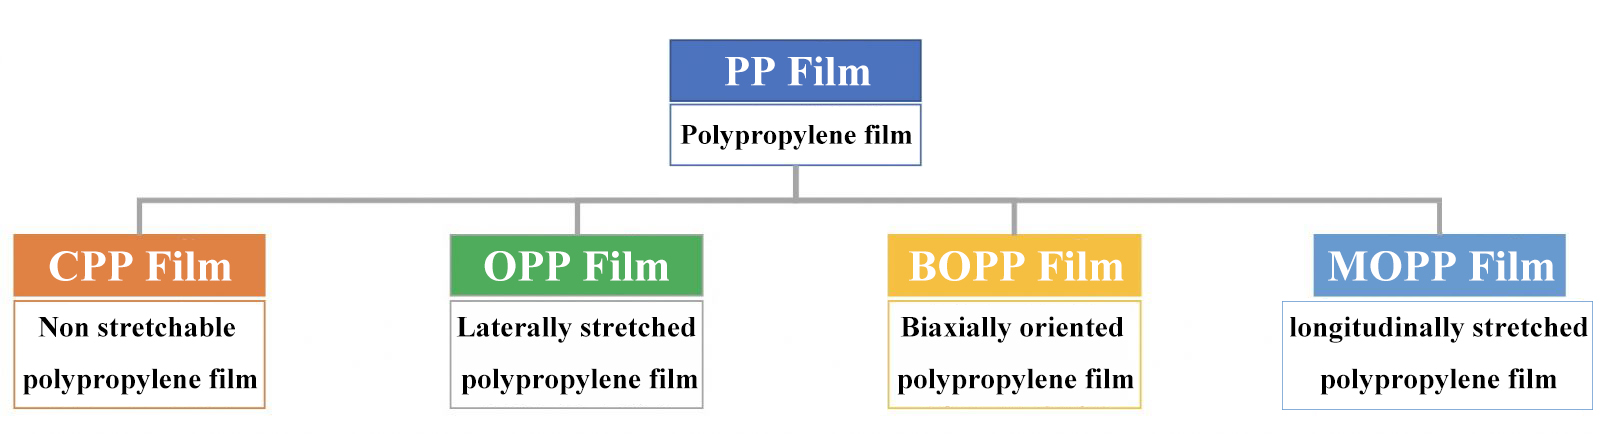 PP Films- Detire kalite